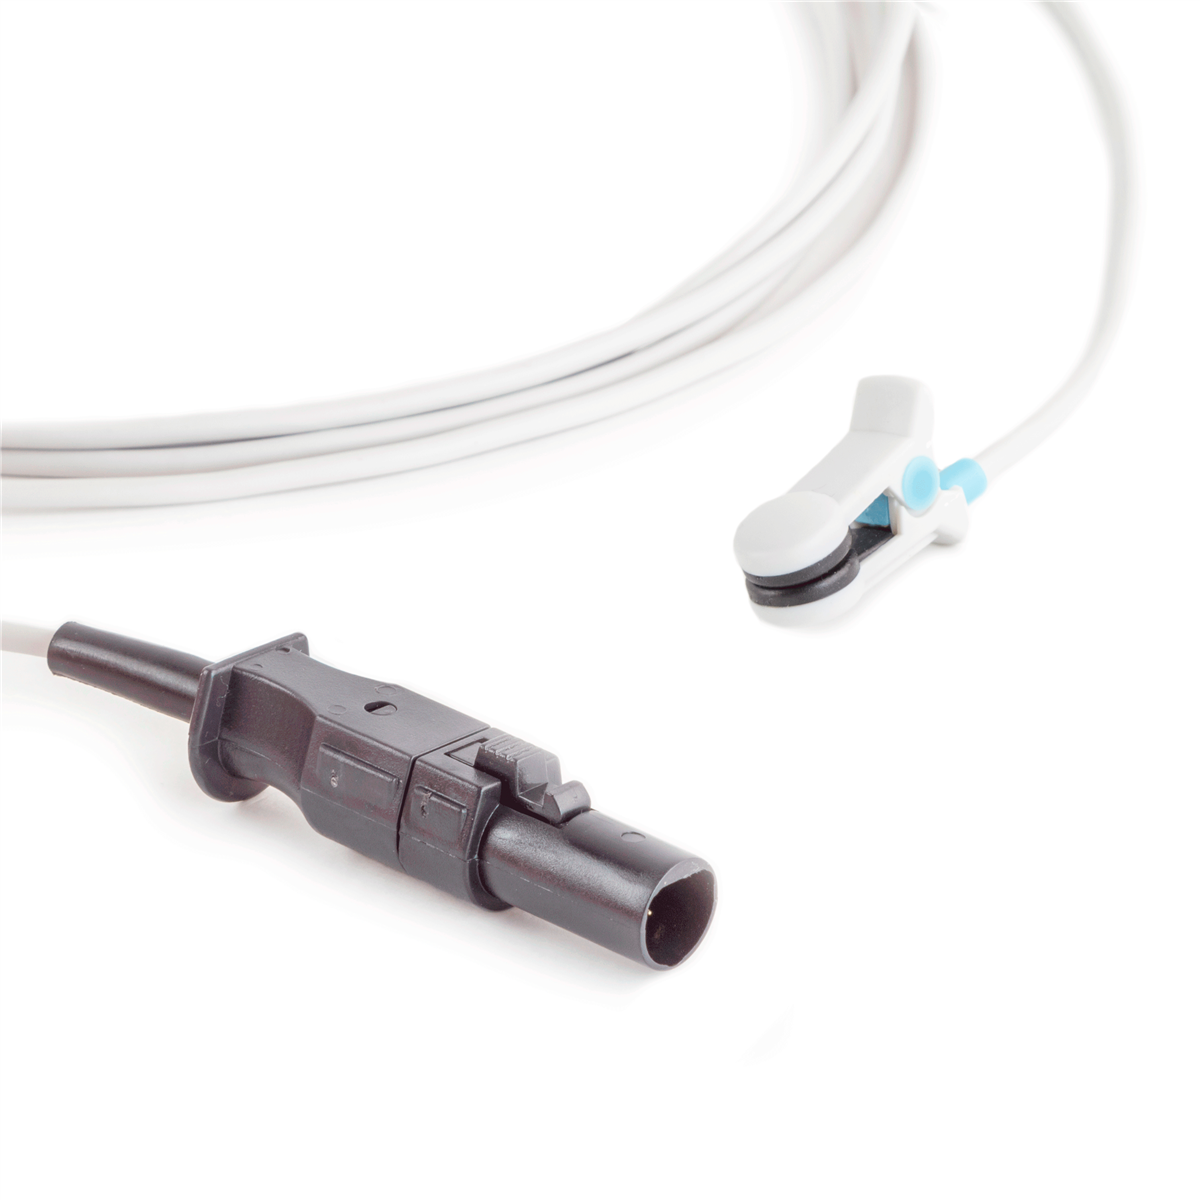 通用电气Datex-Ohmeda Hypertronic耳夹动脉血氧饱和度传感器(10英尺)